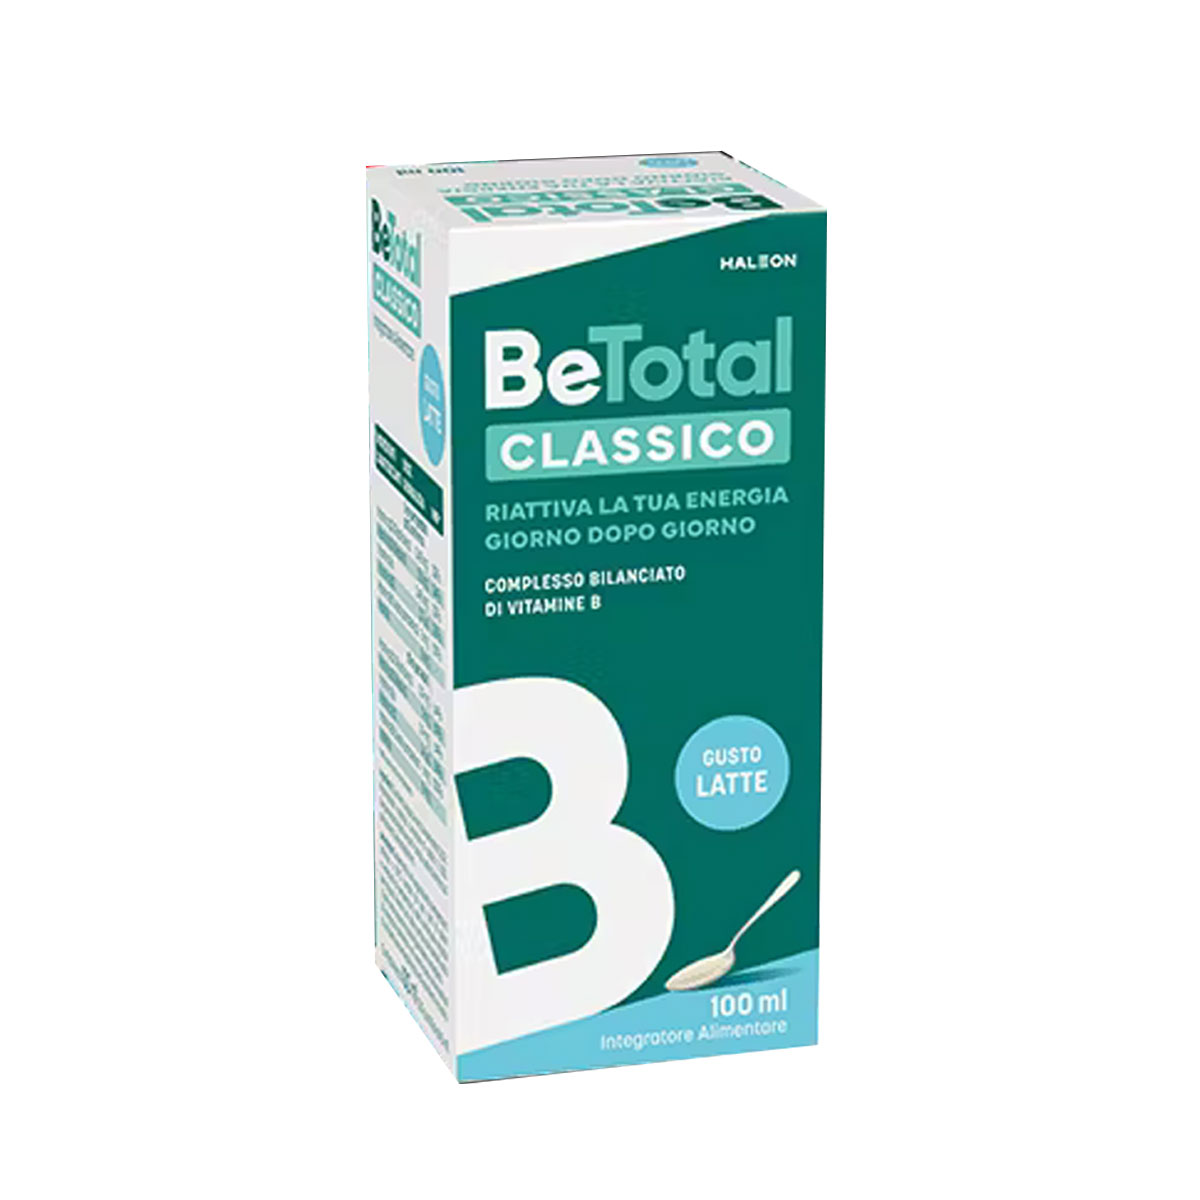 Be-total Classico Sciroppo Vitamina B Gusto Latte 100ml - Top Farmacia